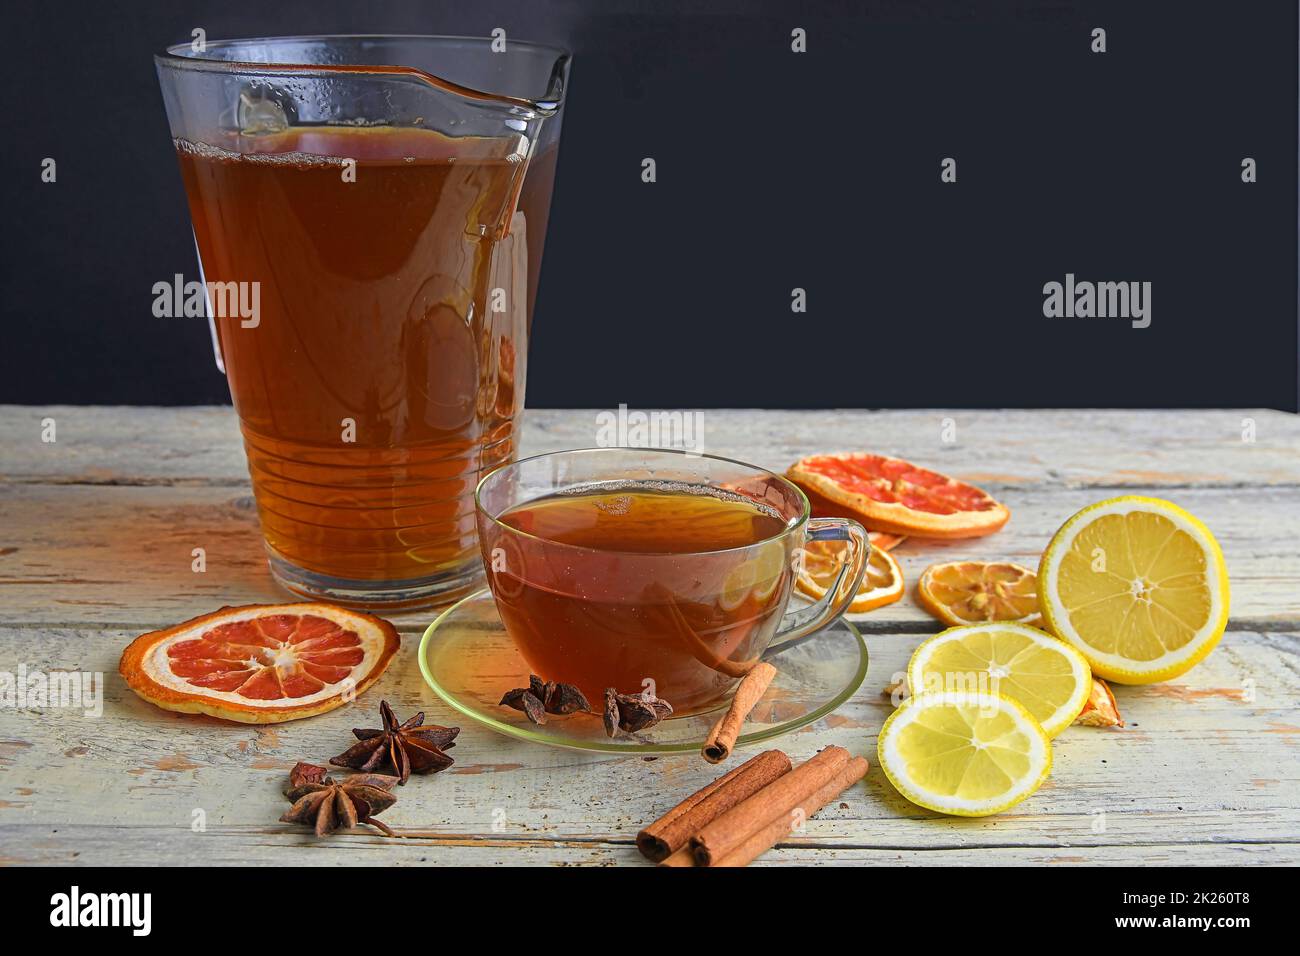 Tasse de thé noir en verre avec bâtonnets de cannelle, étoile anisée, citron et fruits secs sur fond de table en bois blanc.Verseuse de thé noir.Grand espace de copie Banque D'Images